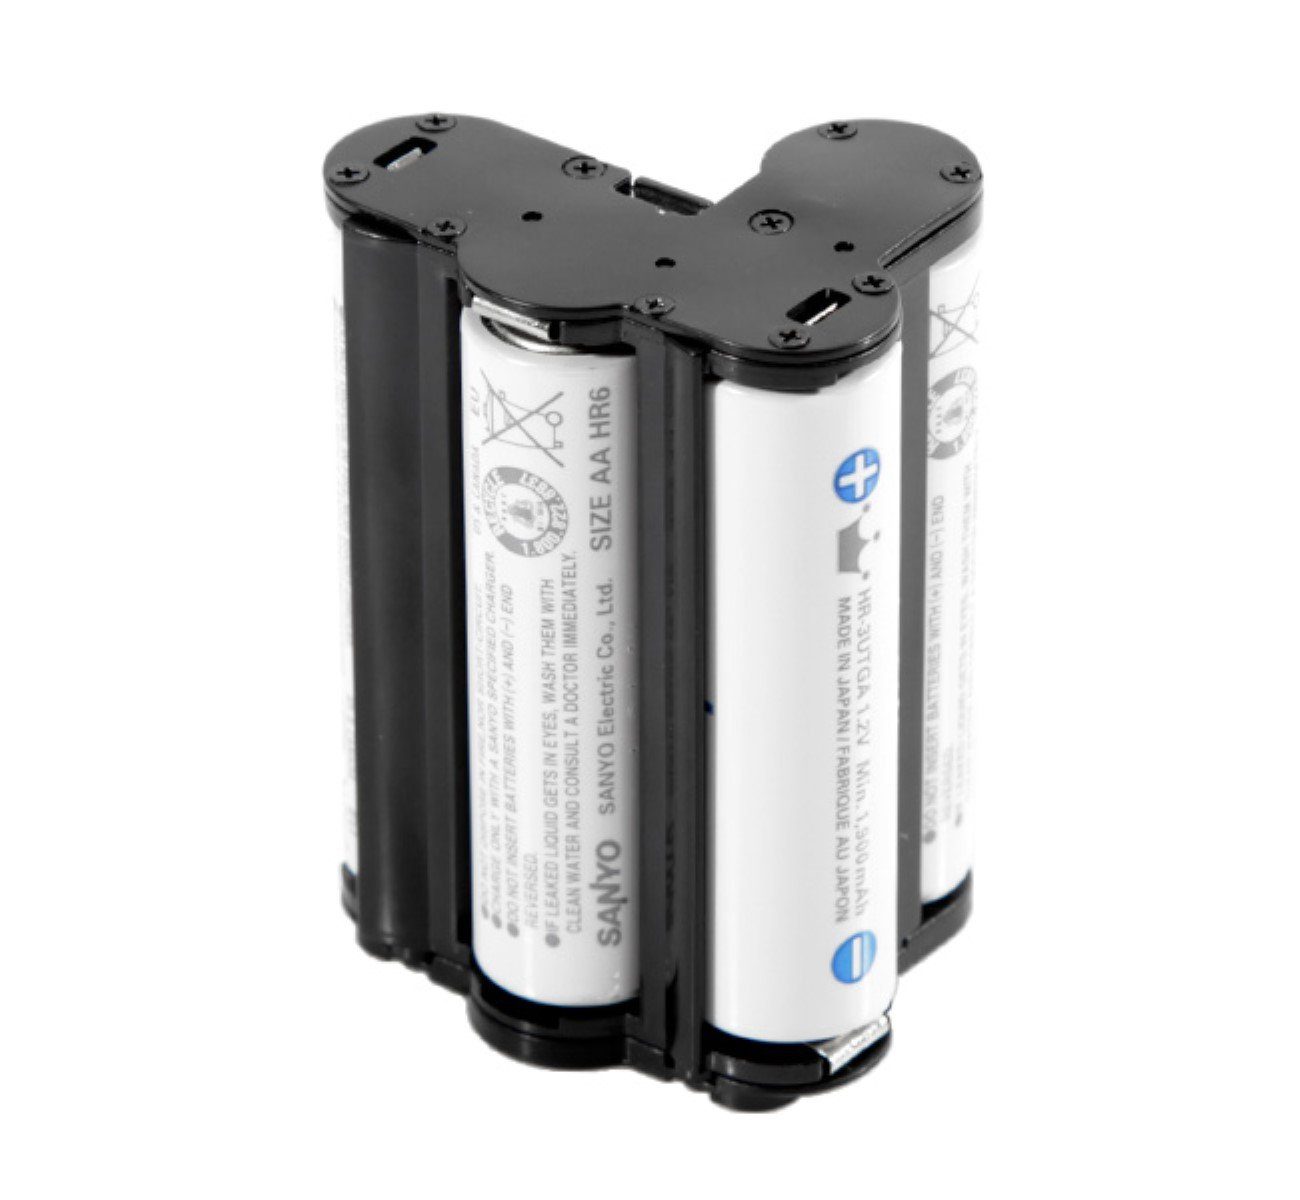 K-R K-30 Batteriehalter Akku K-500 Holder Battery K-S2 K-50 K-S1 ayex Pentax für